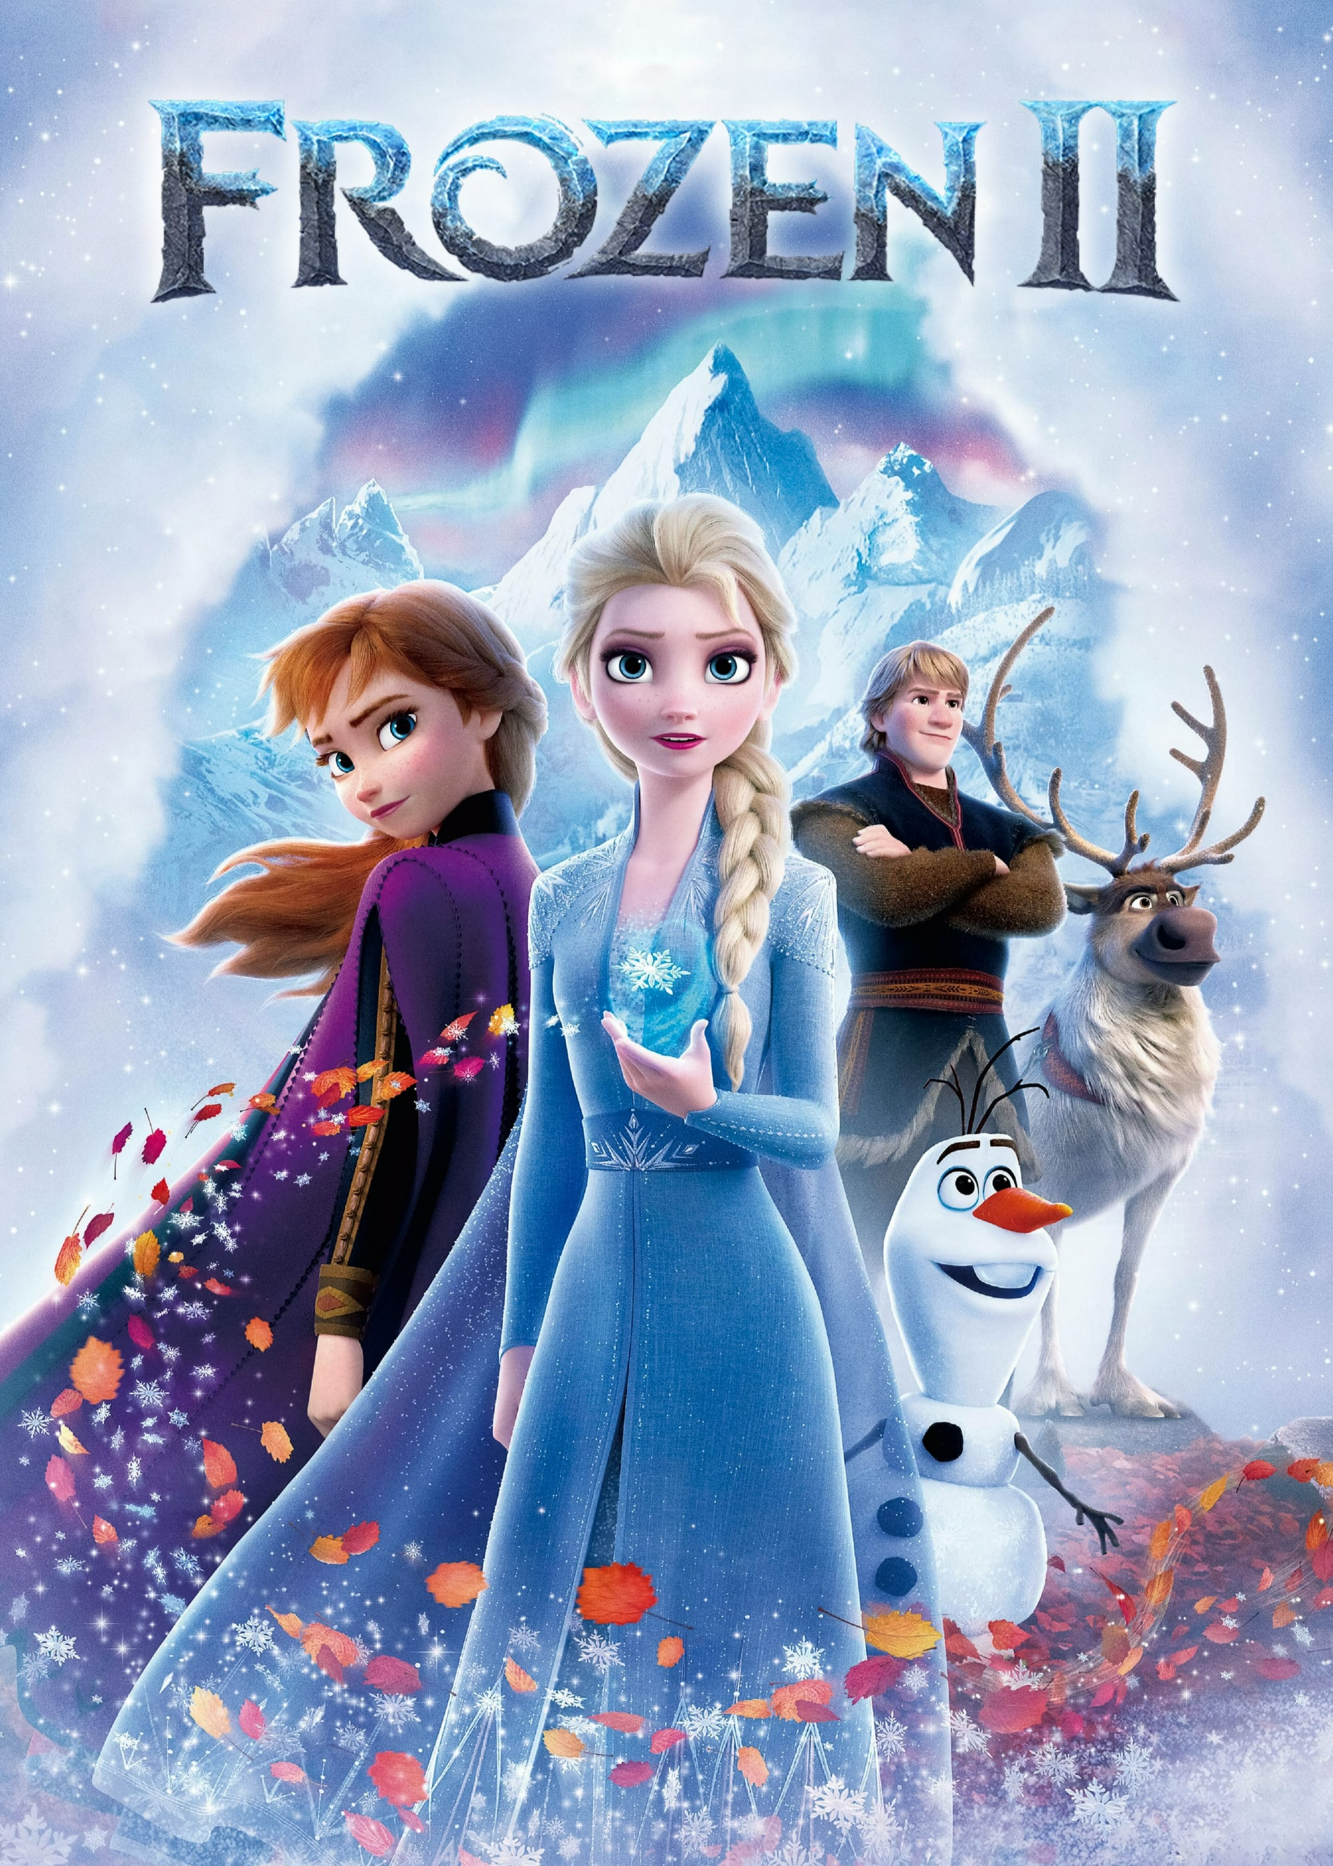 Poster Phim Nữ Hoàng Băng Giá II (Frozen II)